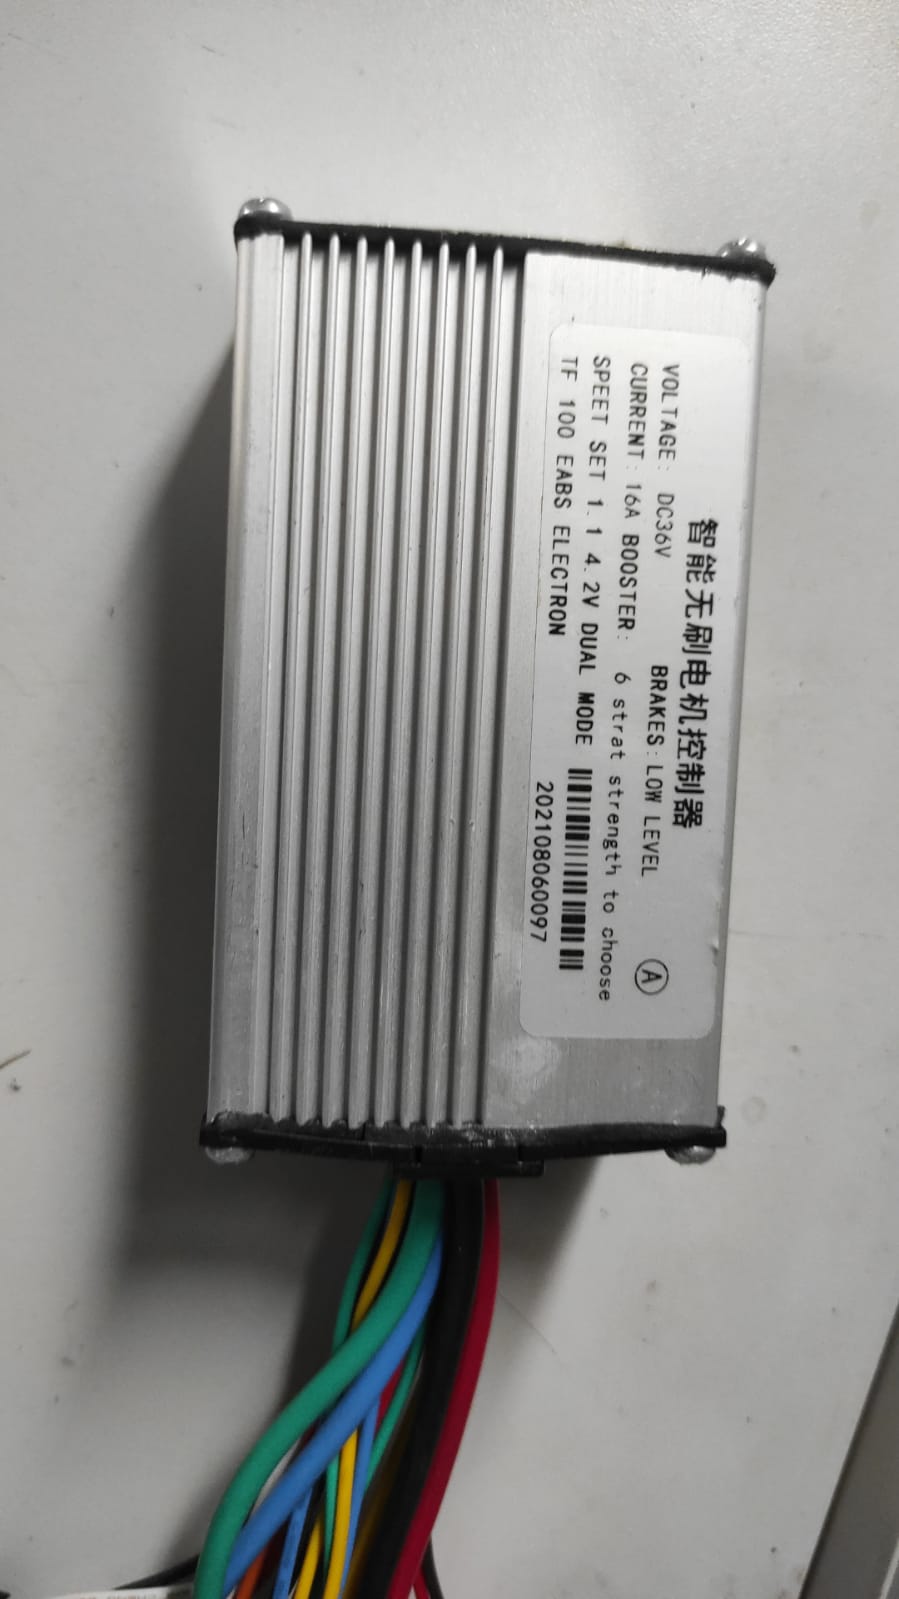 Контроллер для электросамоката Kugoo,MaoMaoKu 36V, 16A, DC36V,  TF 100 EABS ELECTRON